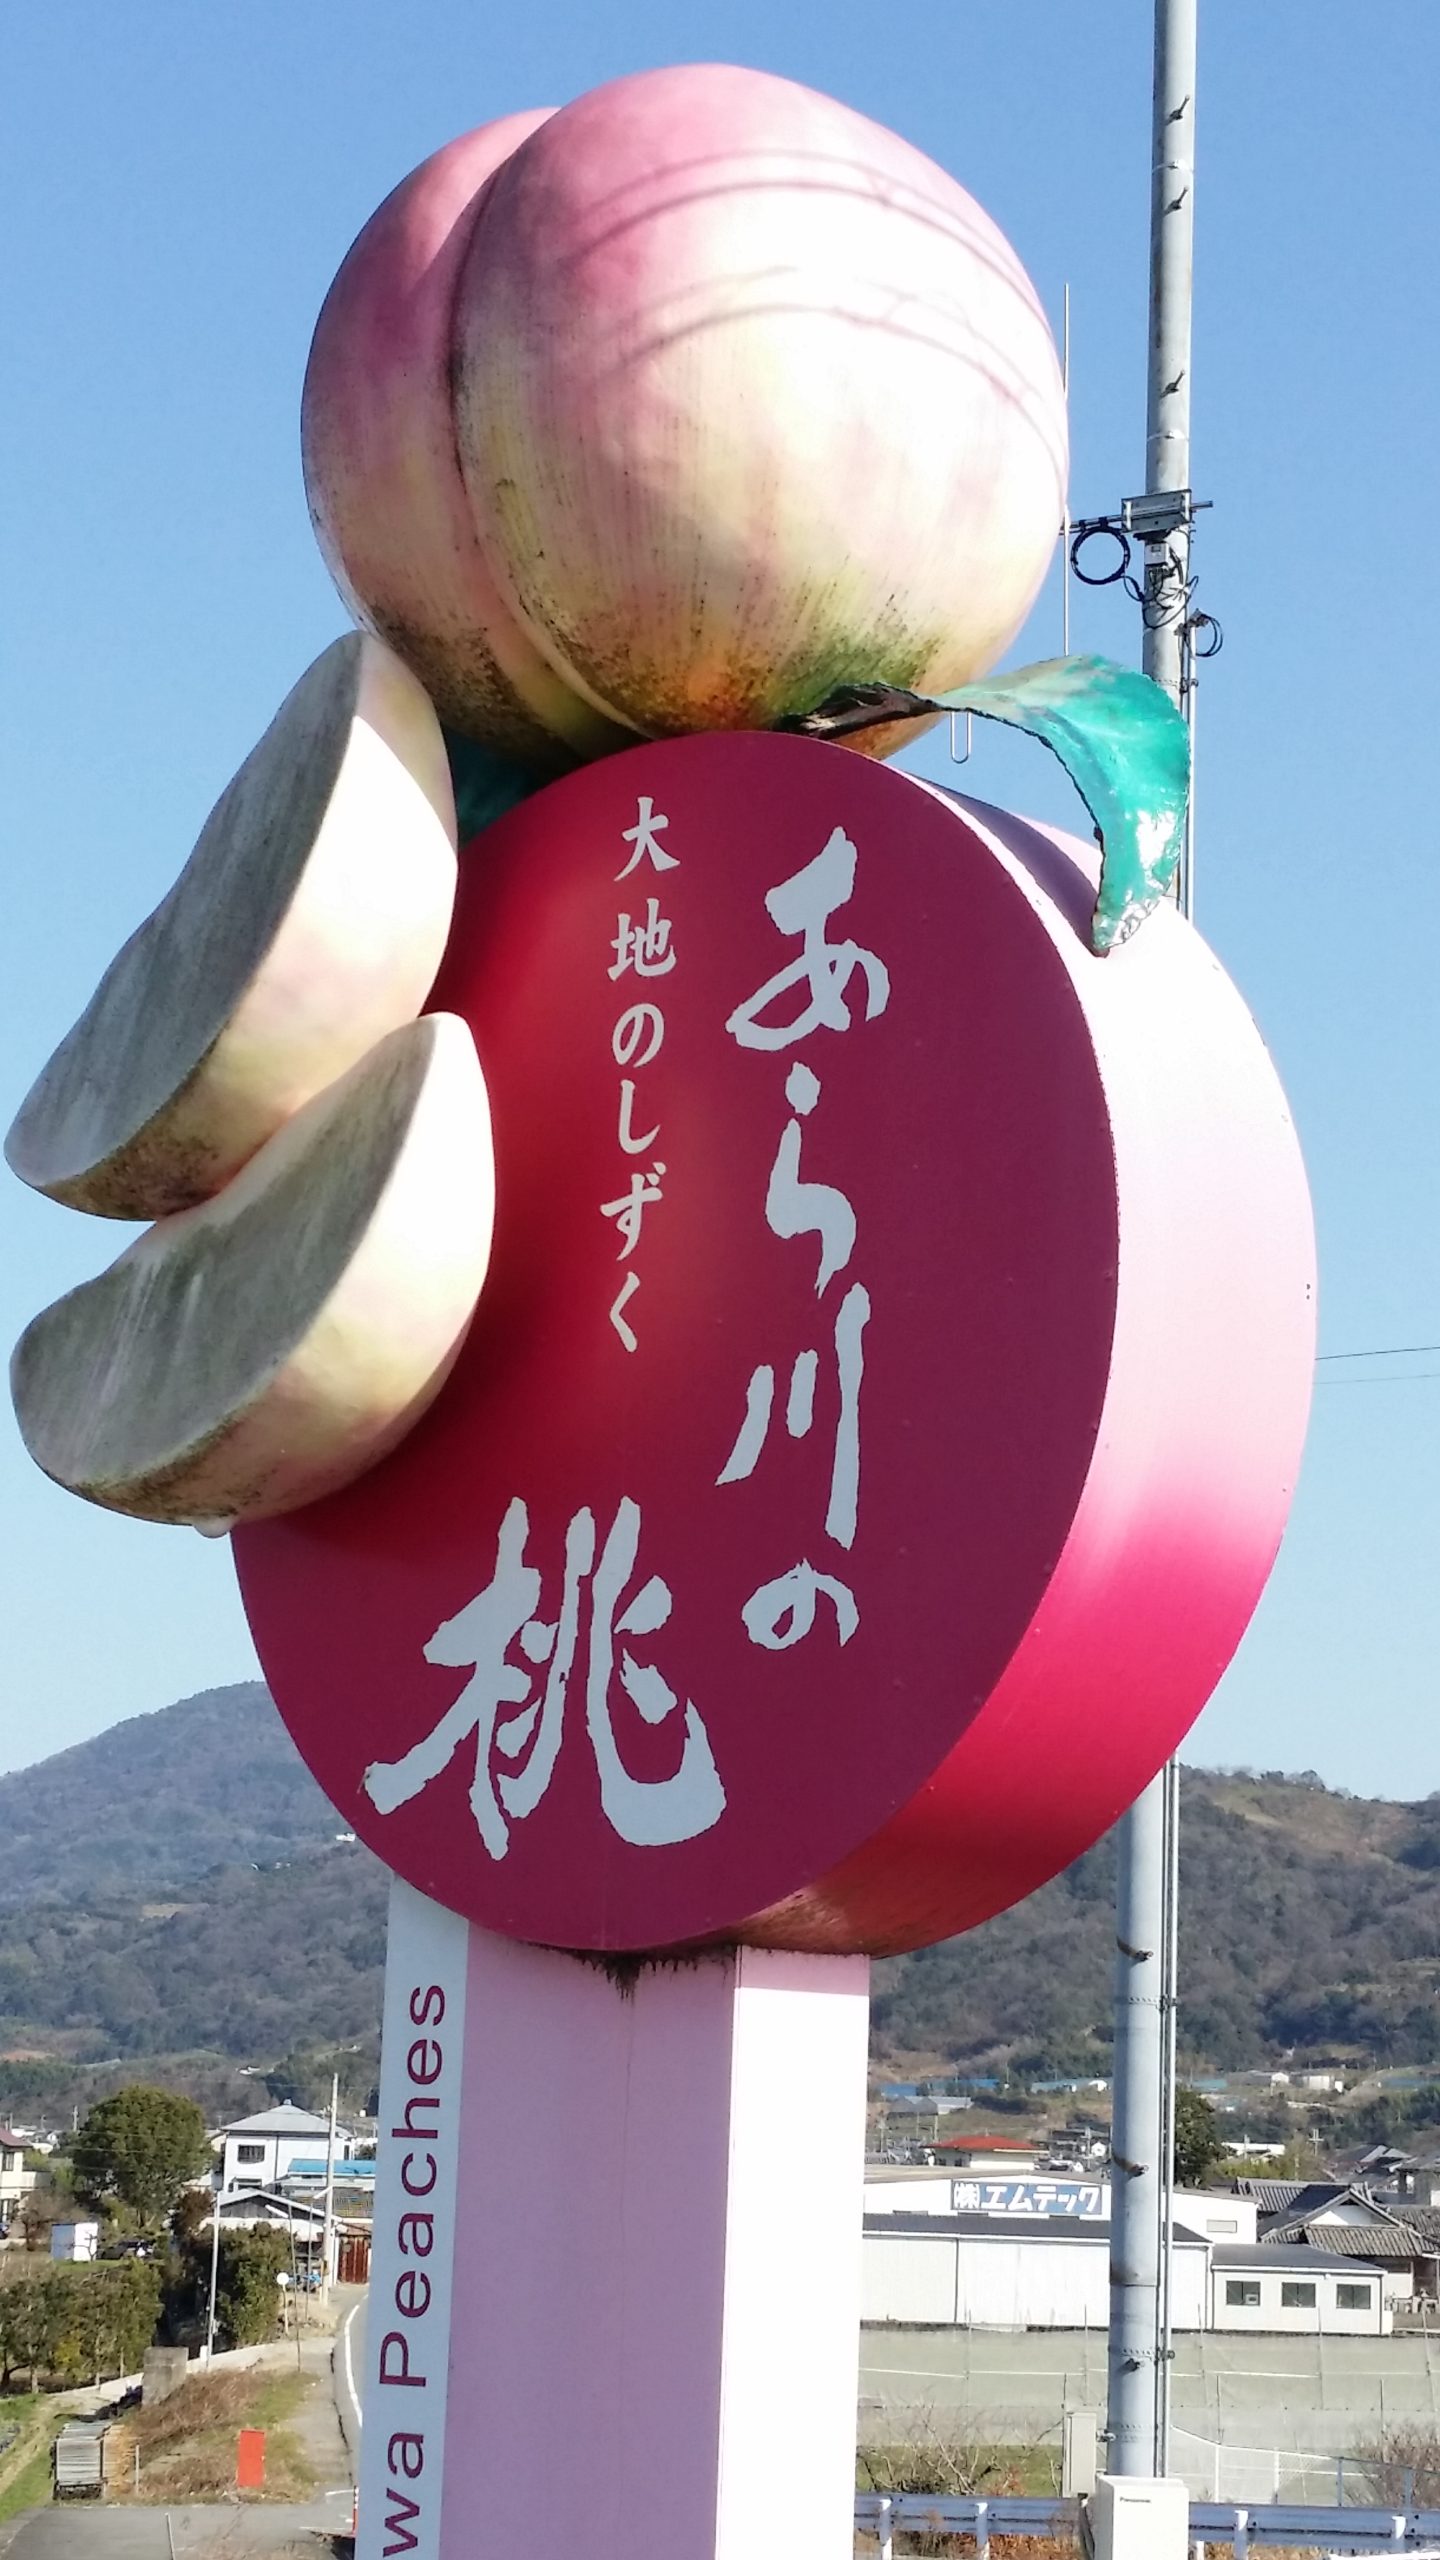 桃山町を象徴する巨大な桃のオブジェ